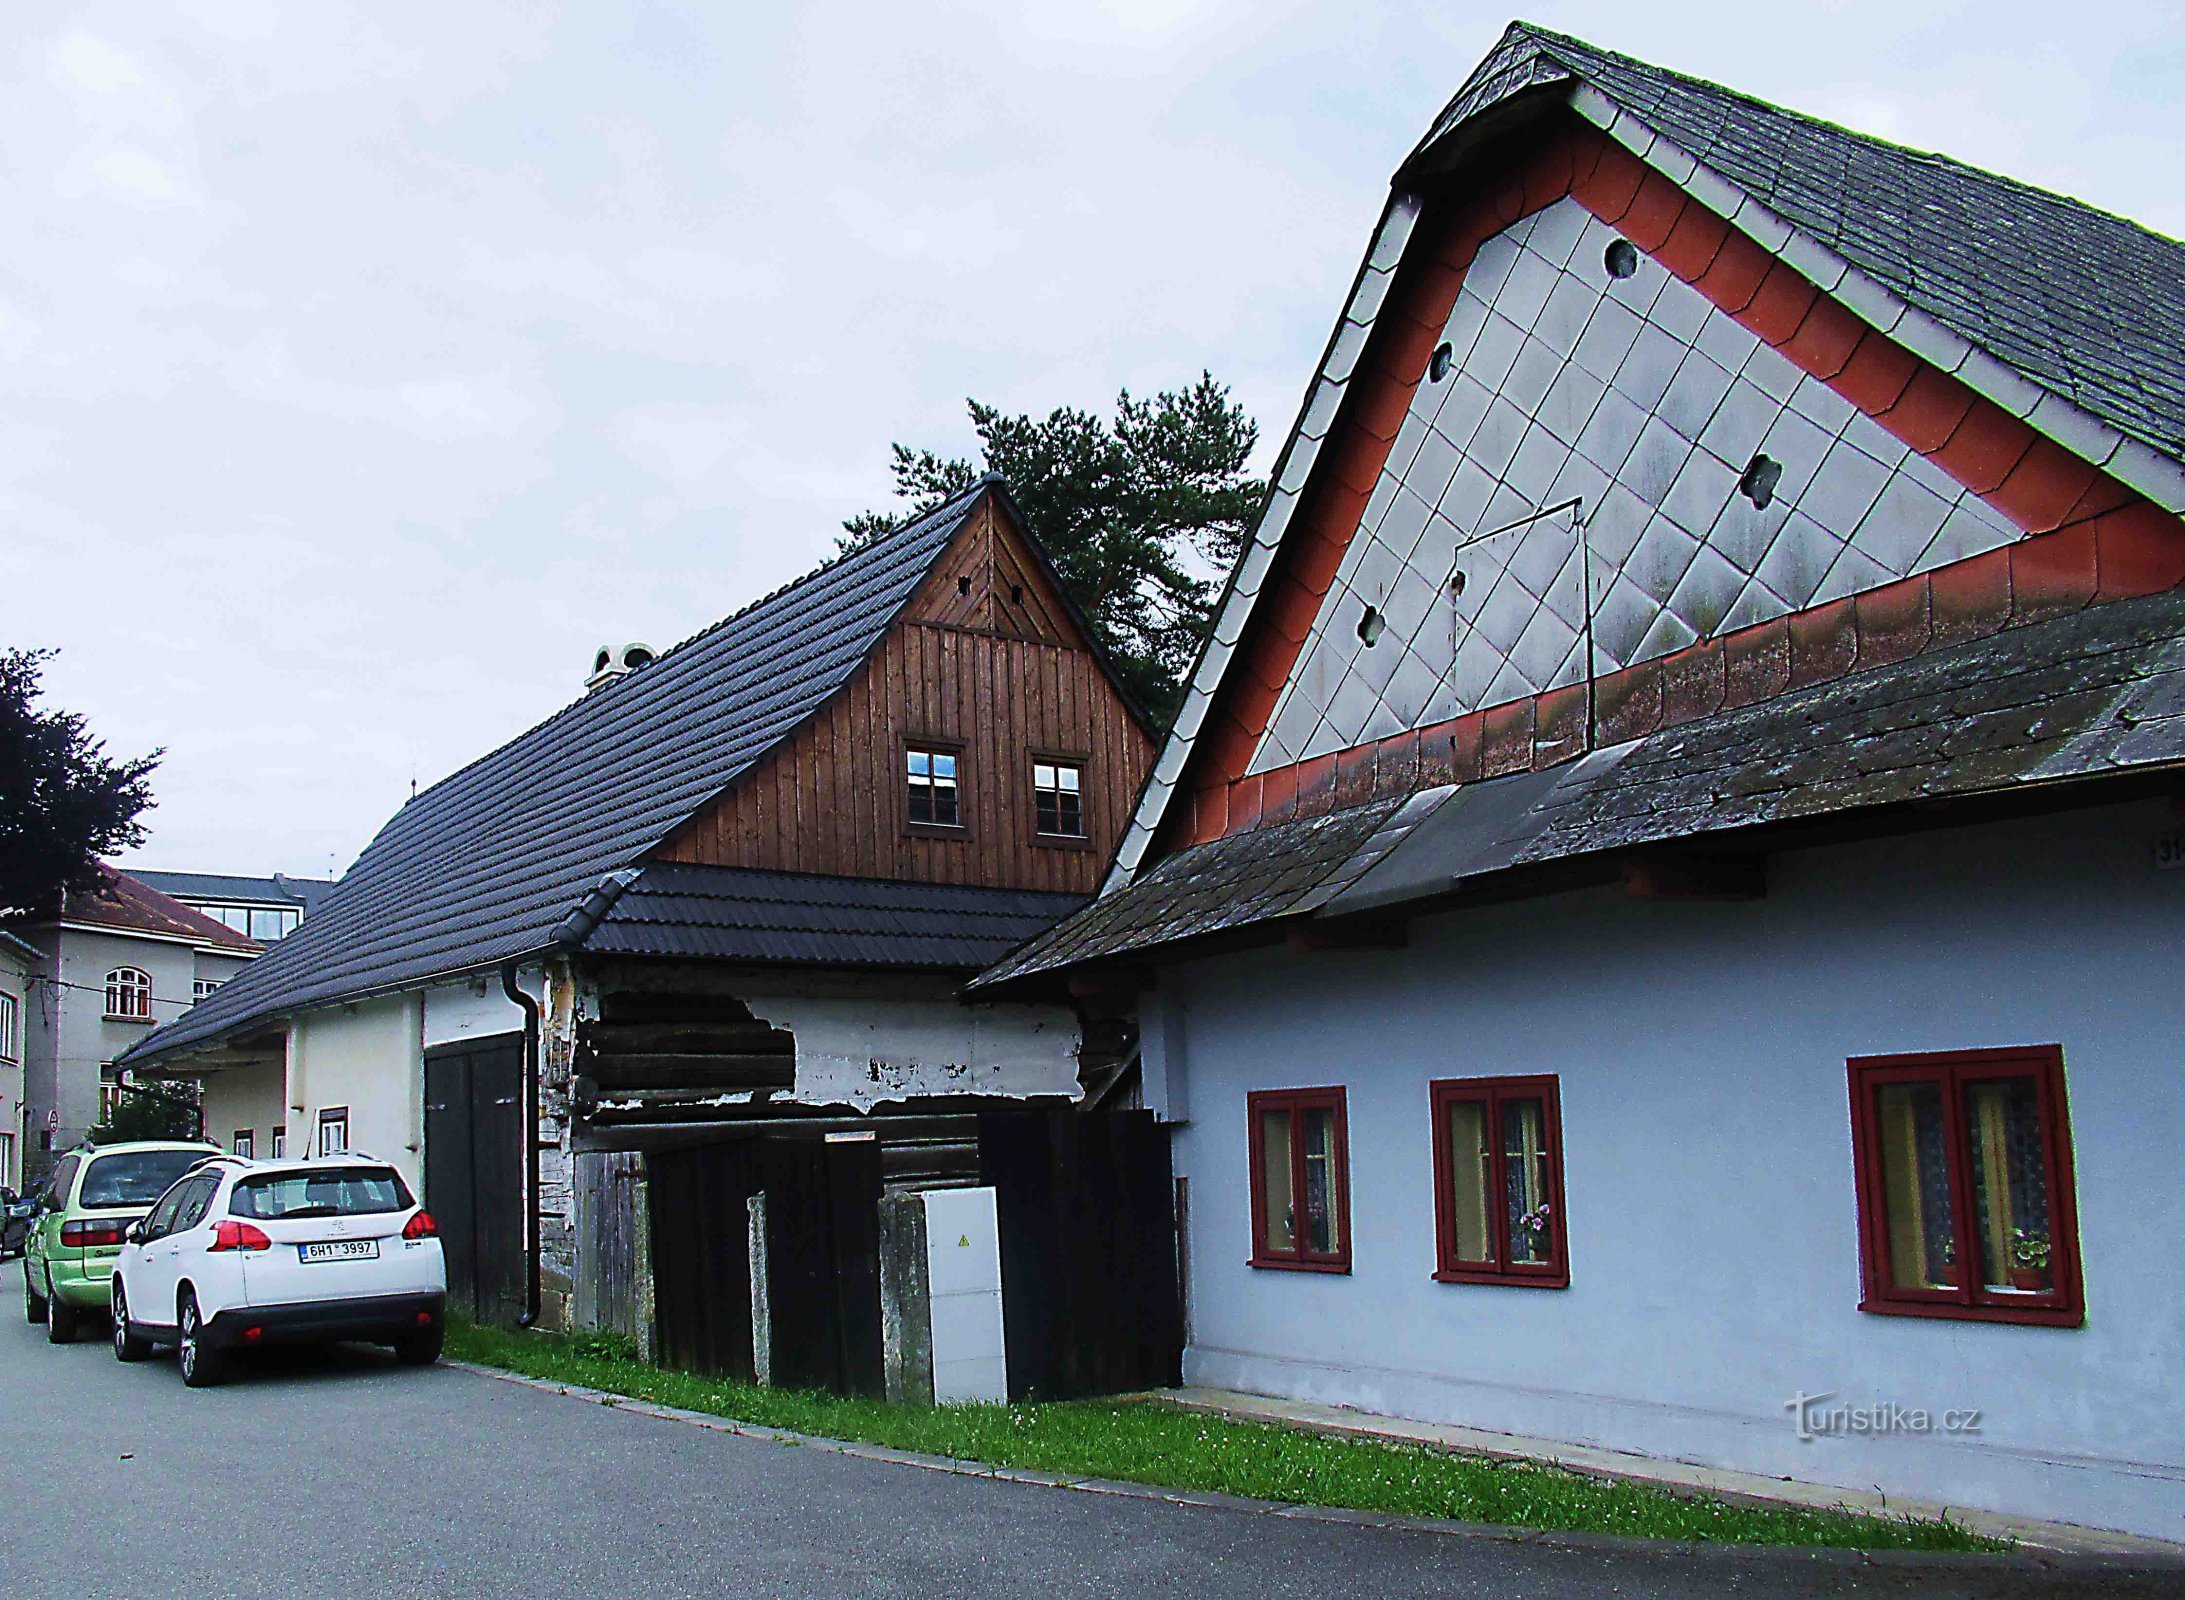 Wevershuizen - volksgebouwen uit de 19e eeuw in Ústí nad Orlicí